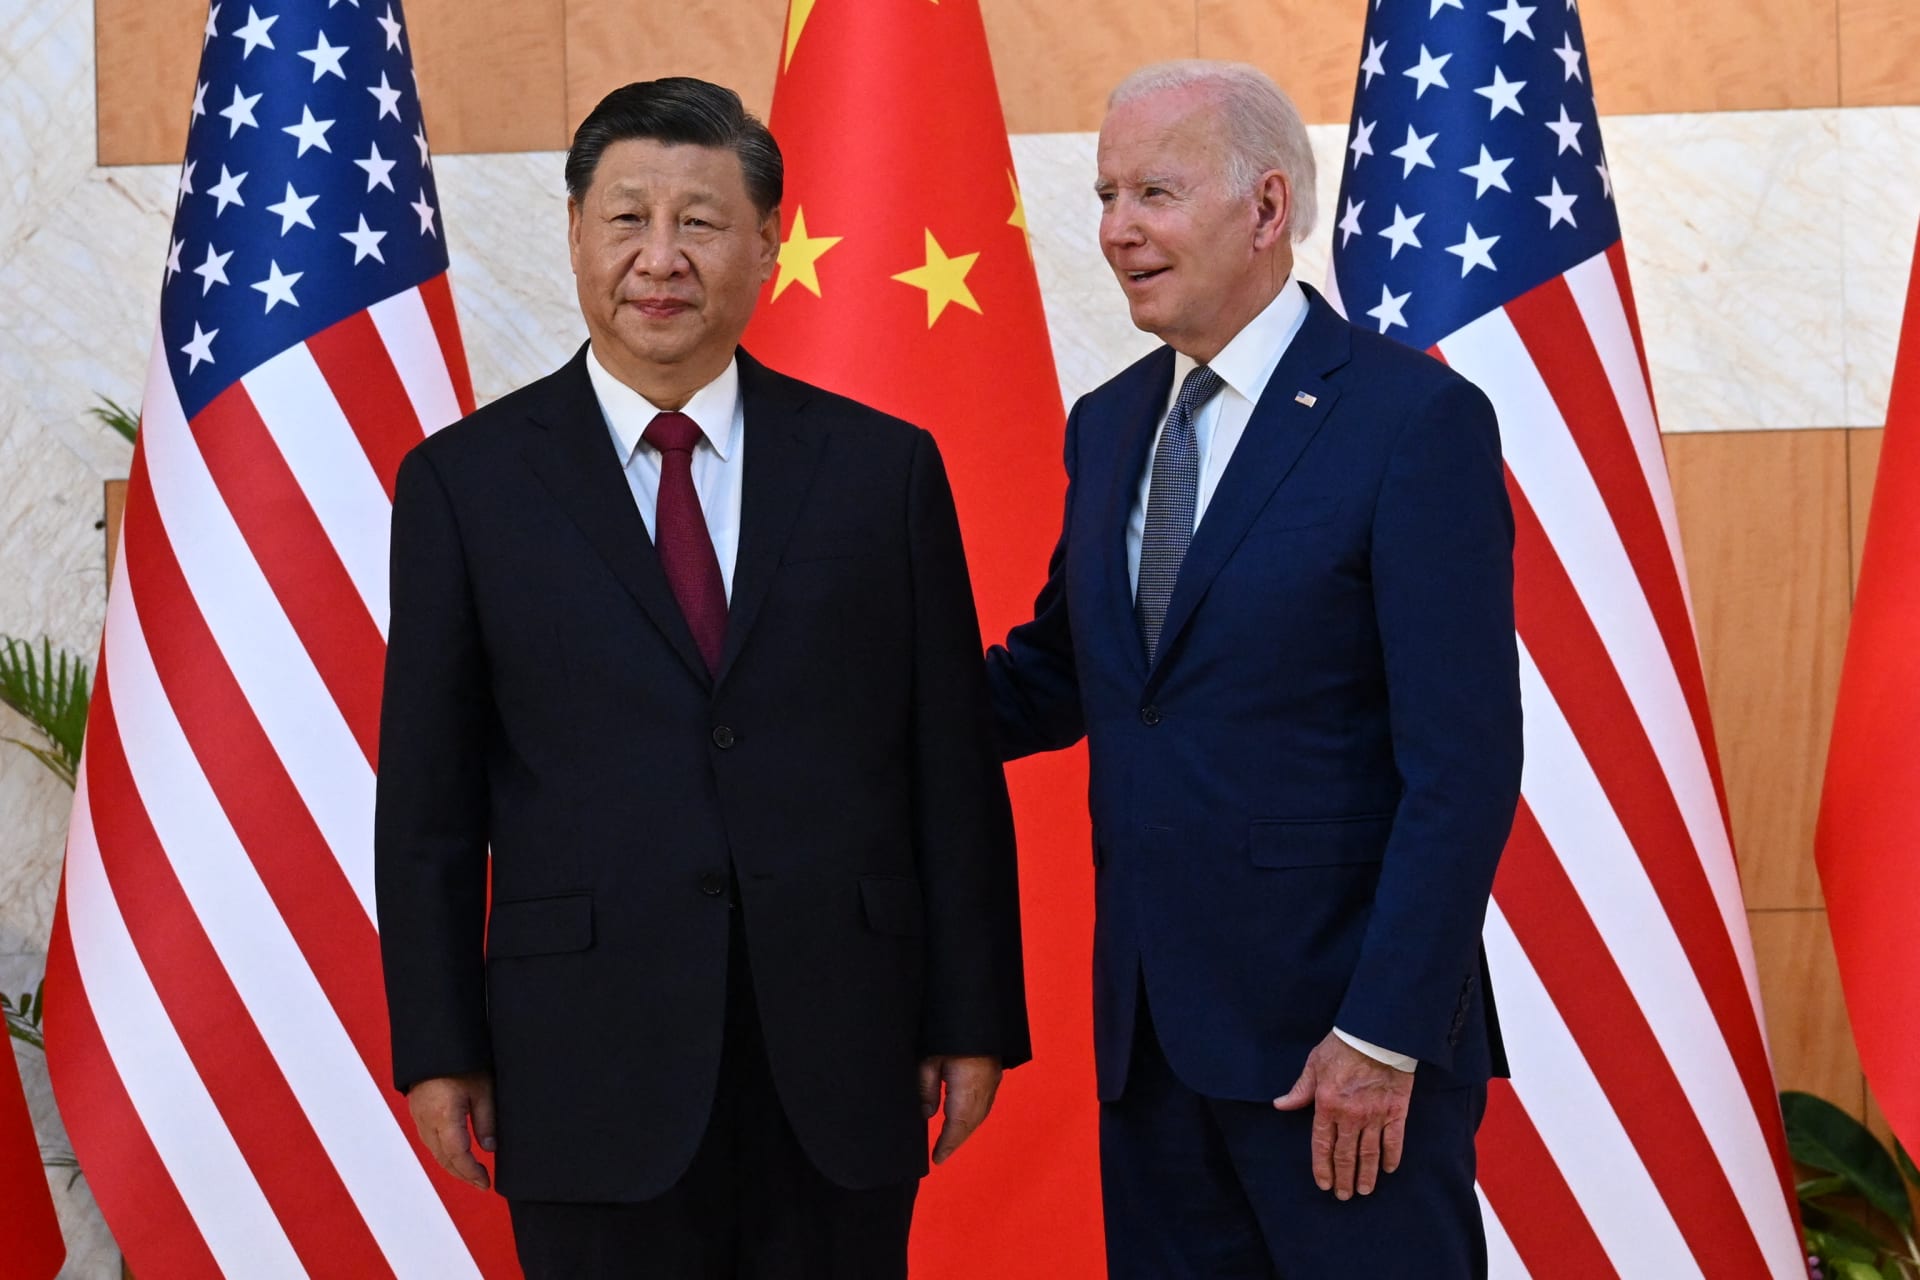 بايدن: وصف شي بـ"الديكتاتور" لم يضر بالعلاقات مع الصين